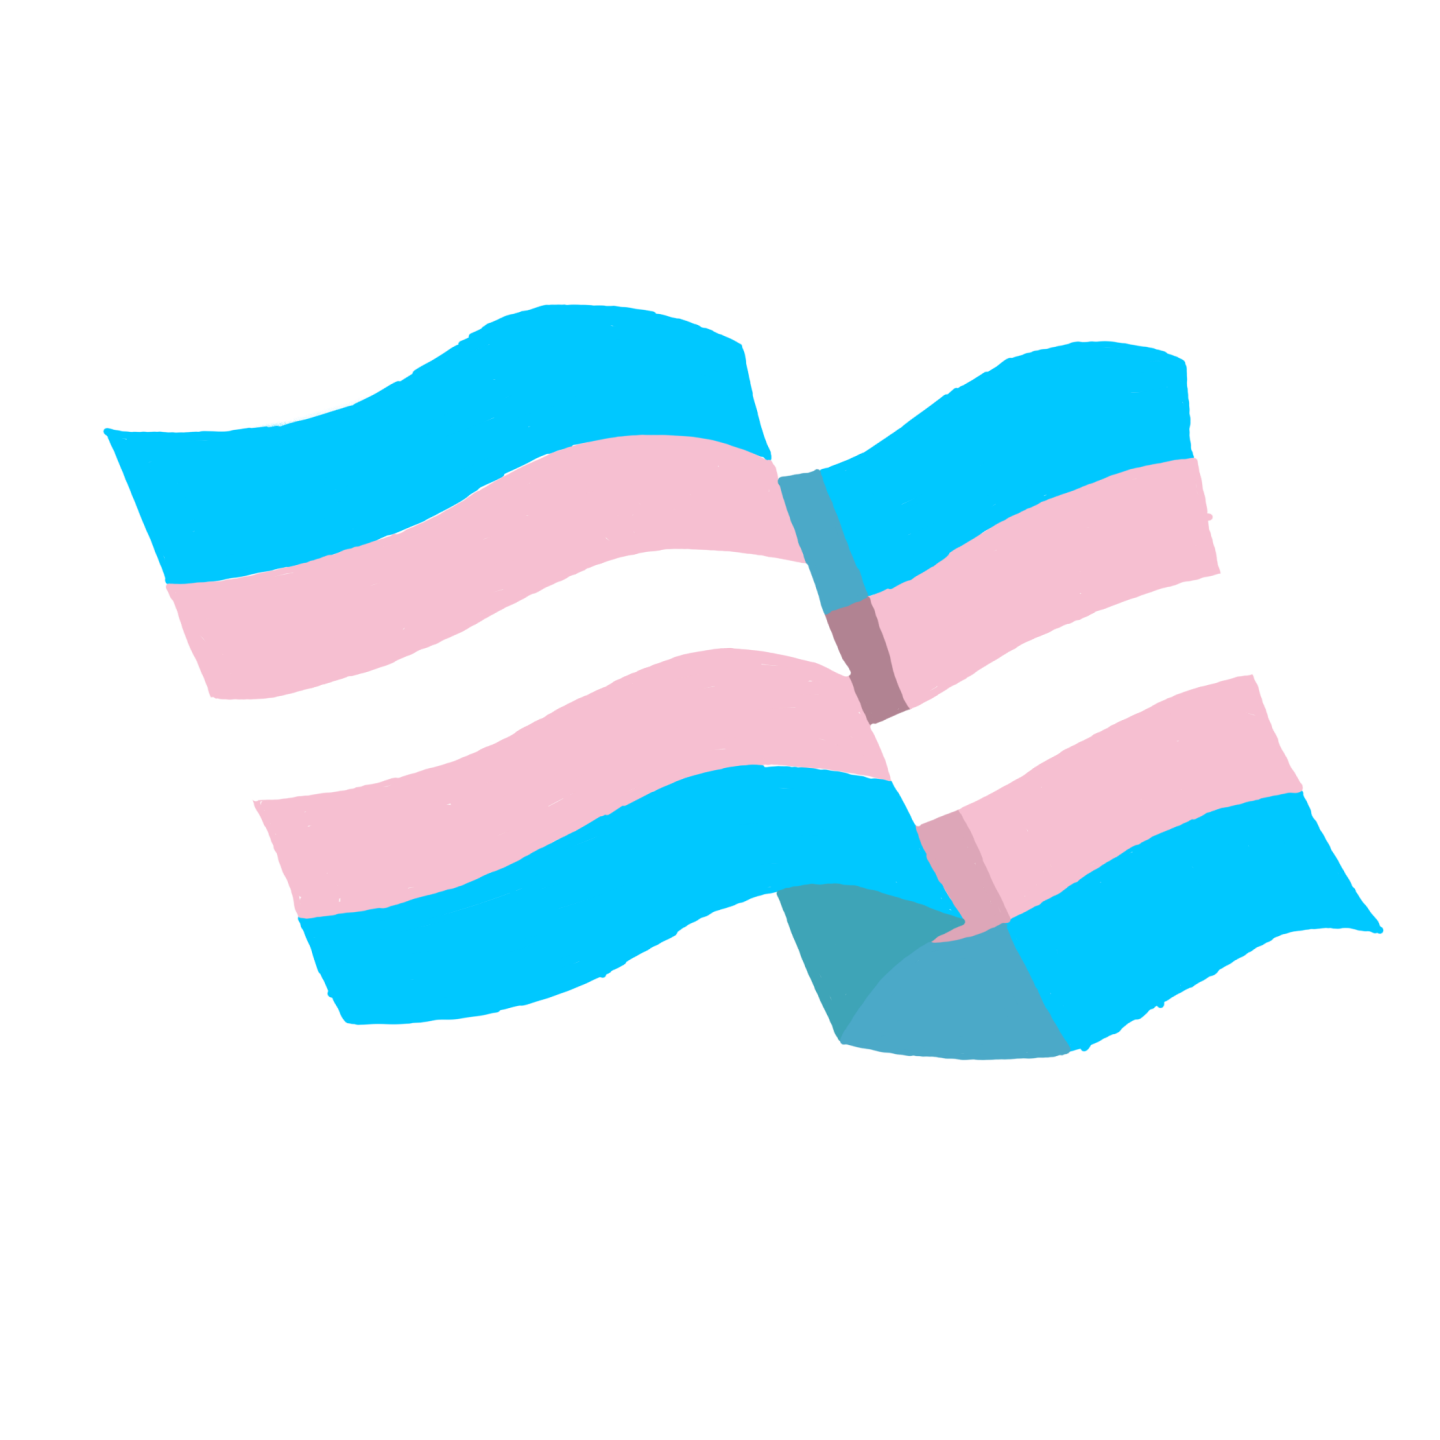 the gay flag emoji